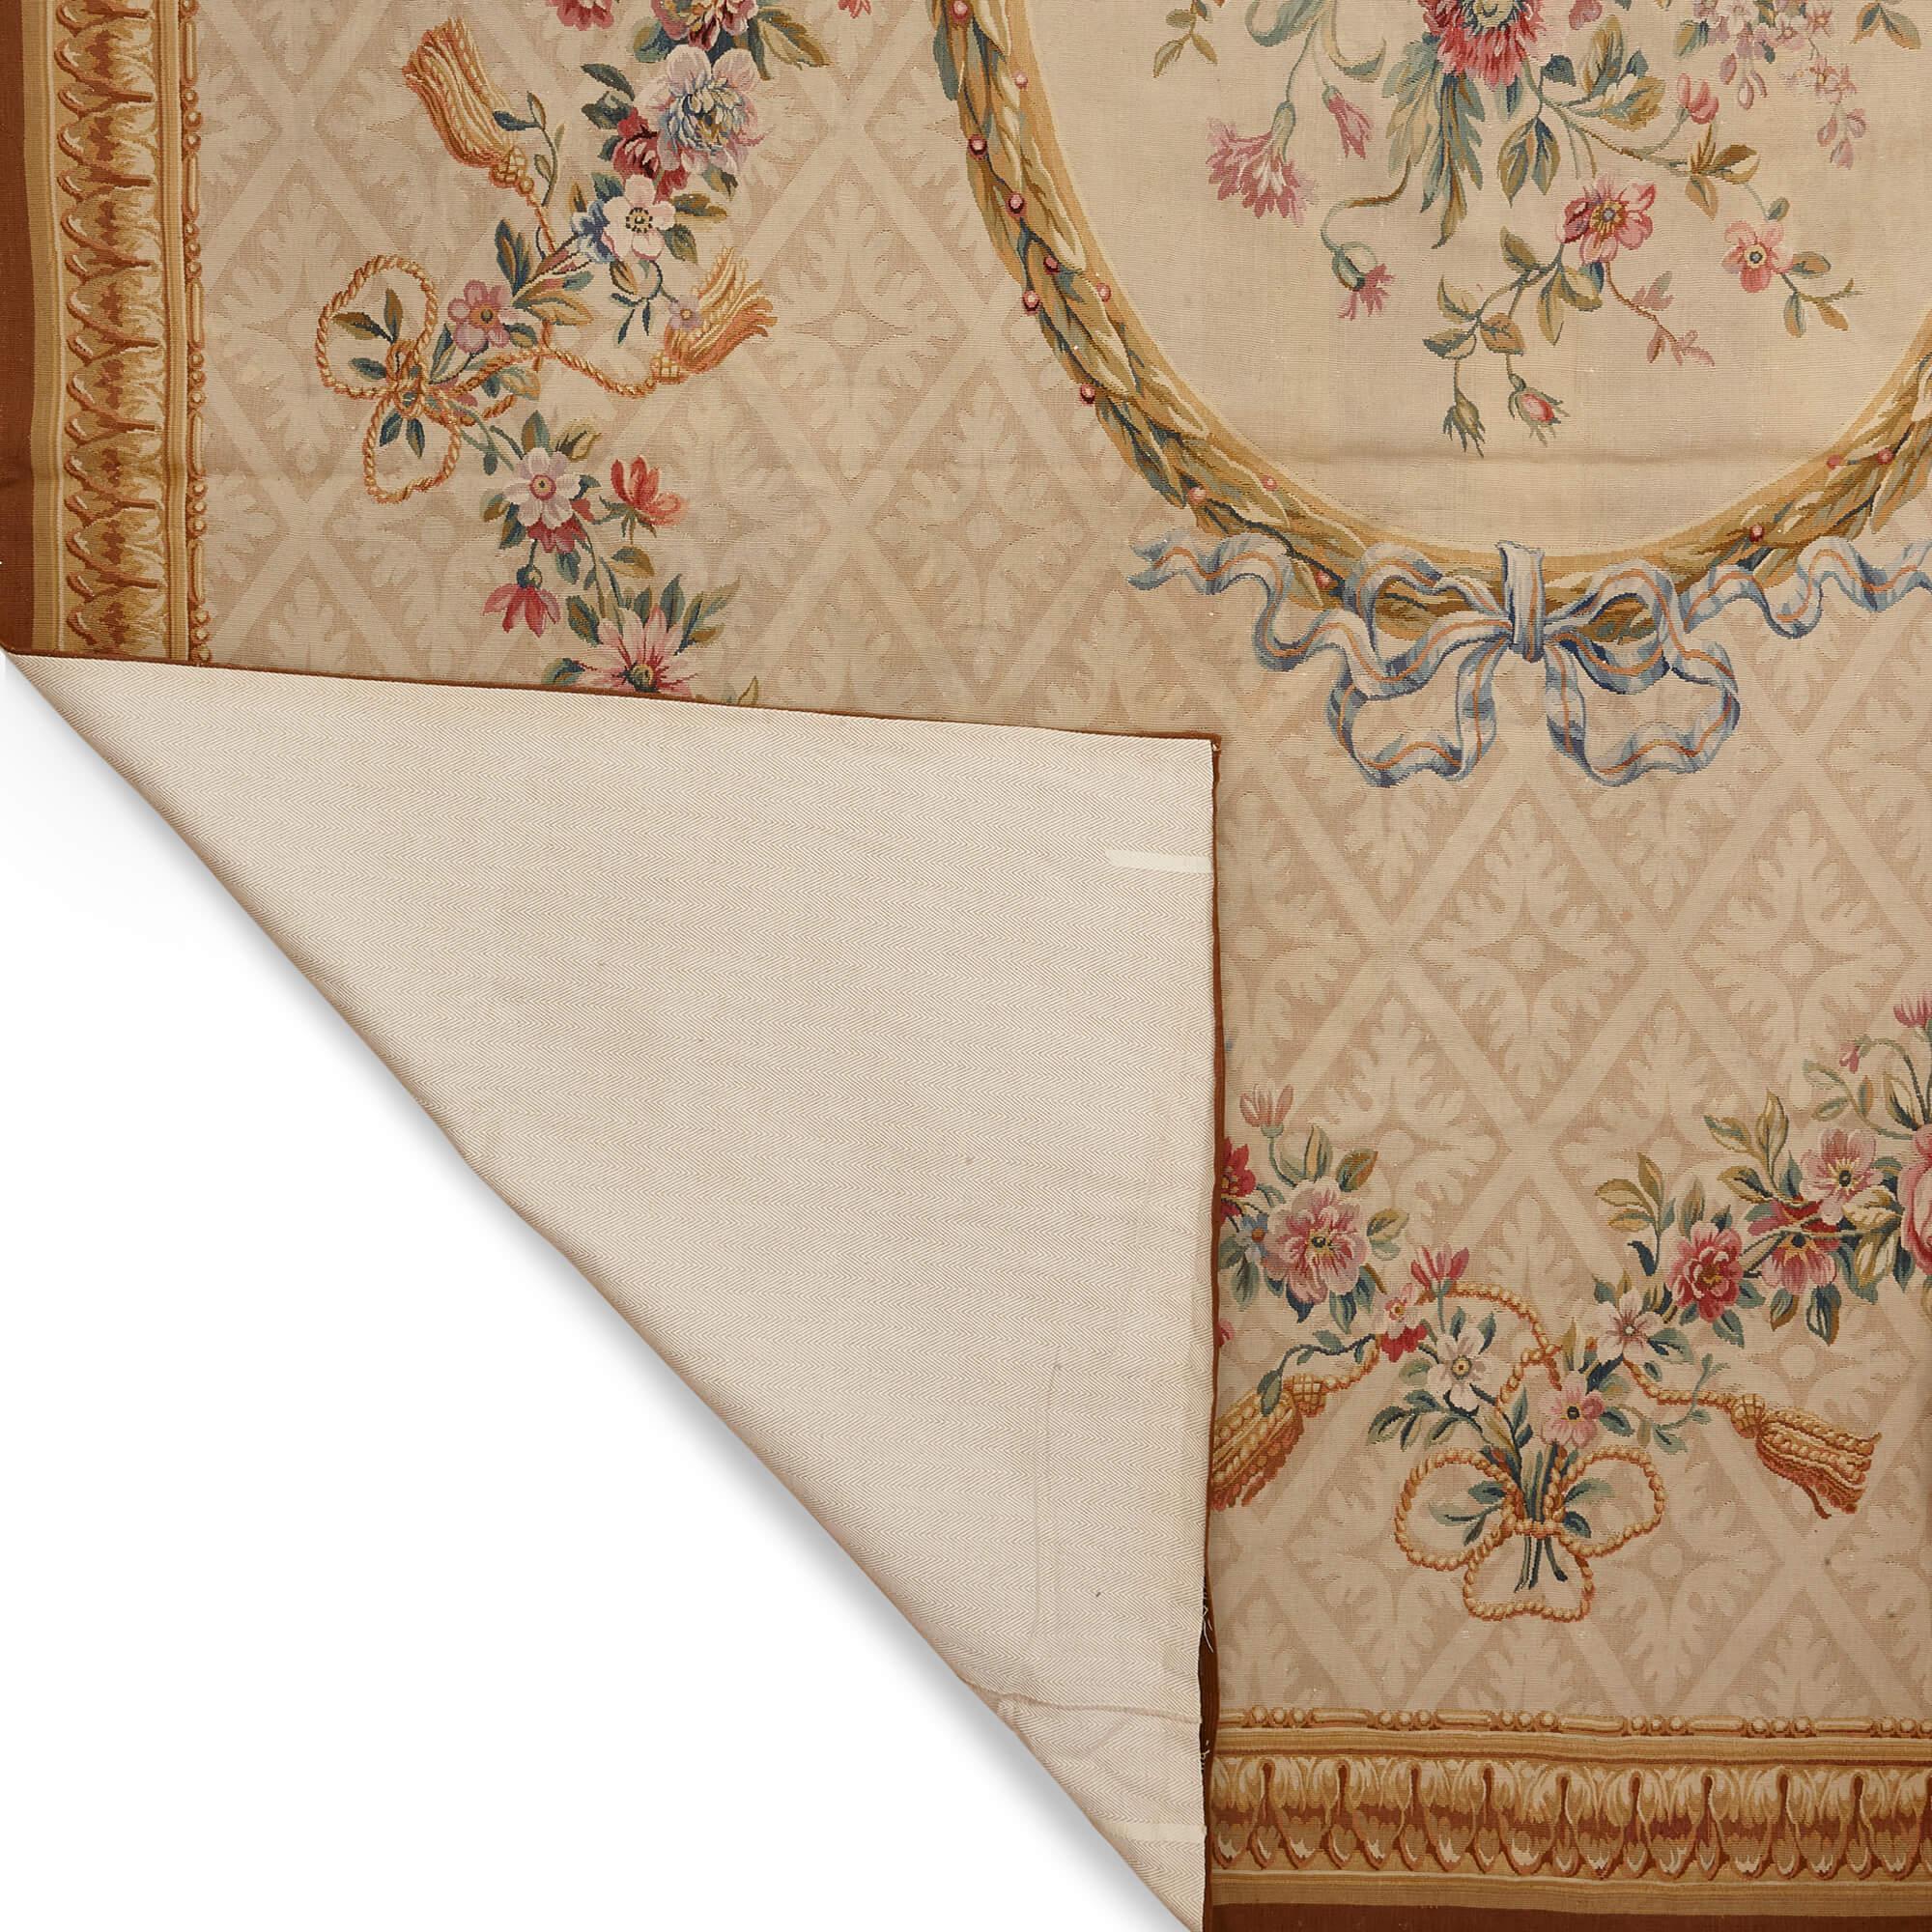 Sehr großer und feiner Aubusson-Blumenteppich
Französisch, um 1870
Breite 453cm, Tiefe 320cm

Dieser exquisite Aubusson-Teppich zieht den Betrachter mühelos in seinen Bann und ist eine Hommage an die berühmte Tradition der französischen